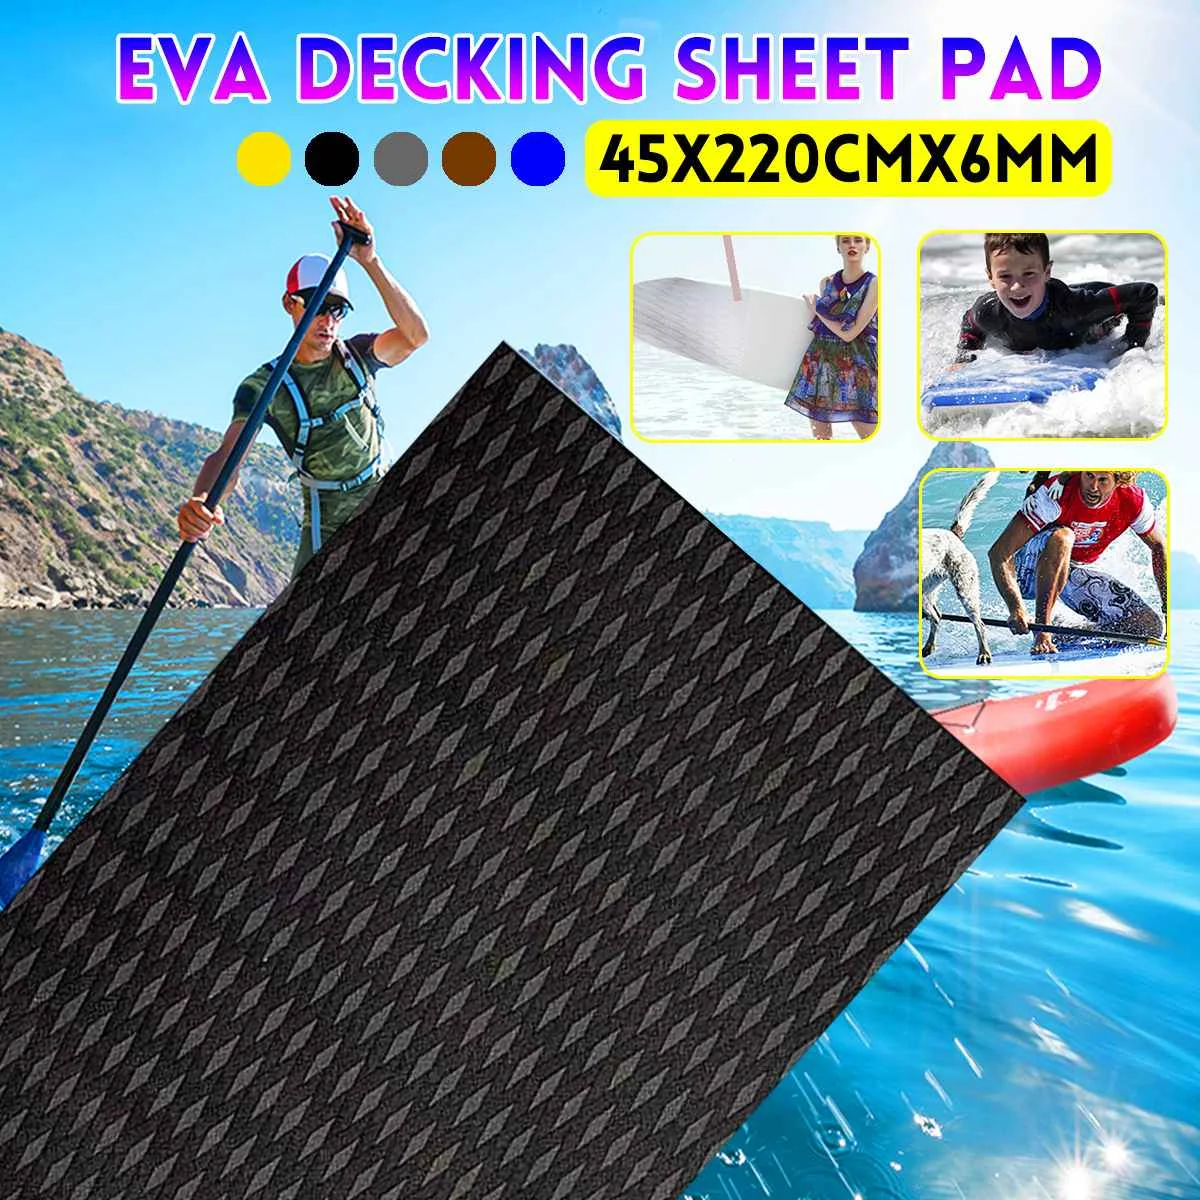 Нескользящая Тяговая прокладка для захвата палубный коврик 45x220 см Trimmable EVA лист клей для лодки каяк морская яхта SUP настил для пола